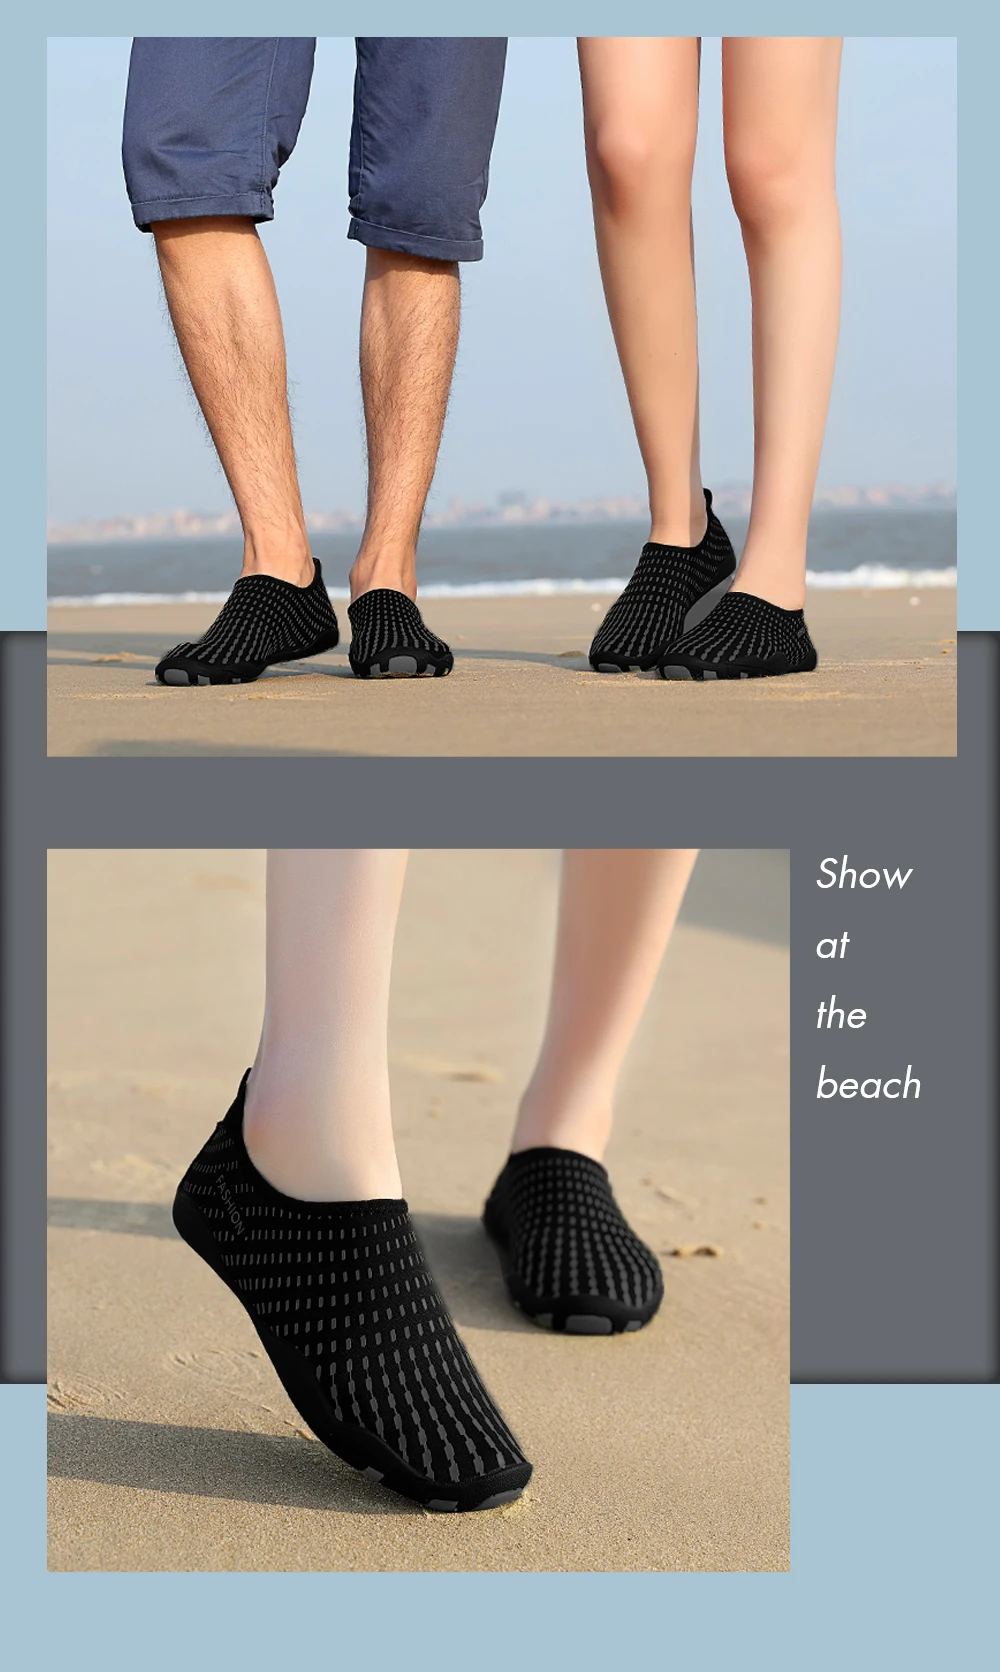 Кроссовки для водных видов спорта для мужчин и женщин; обувь для плавания; ультрапортативная обувь; обувь для пляжа и бассейна; обувь для мокрого плавания; Лучшая водонепроницаемая обувь для улицы